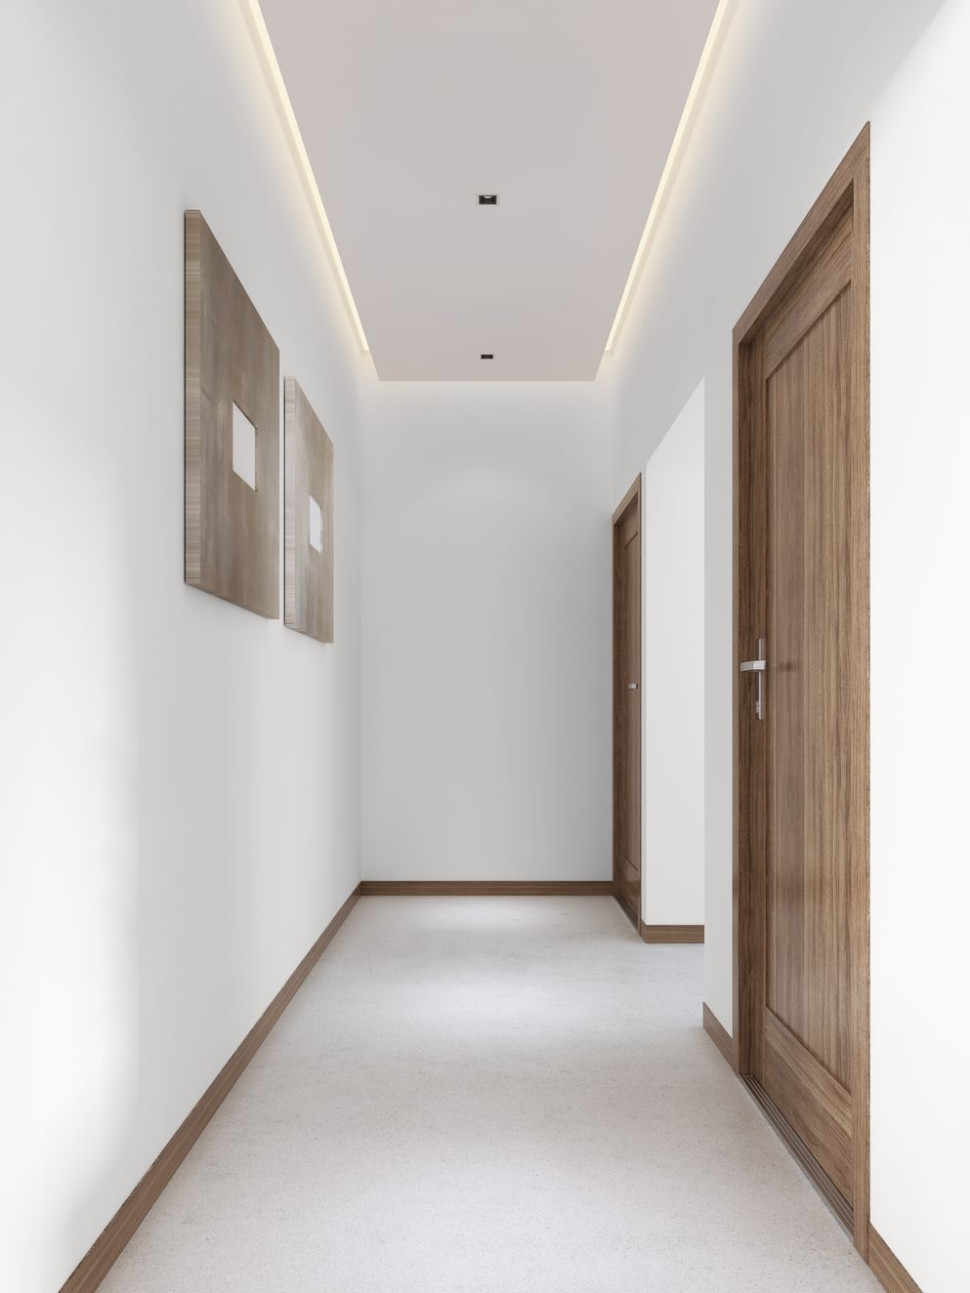 În cazul unui coridor îngust, unde fiecare centimetru este important, soluția ideală ar fi să folosiți alb ca zăpada pe tavan și pereți.